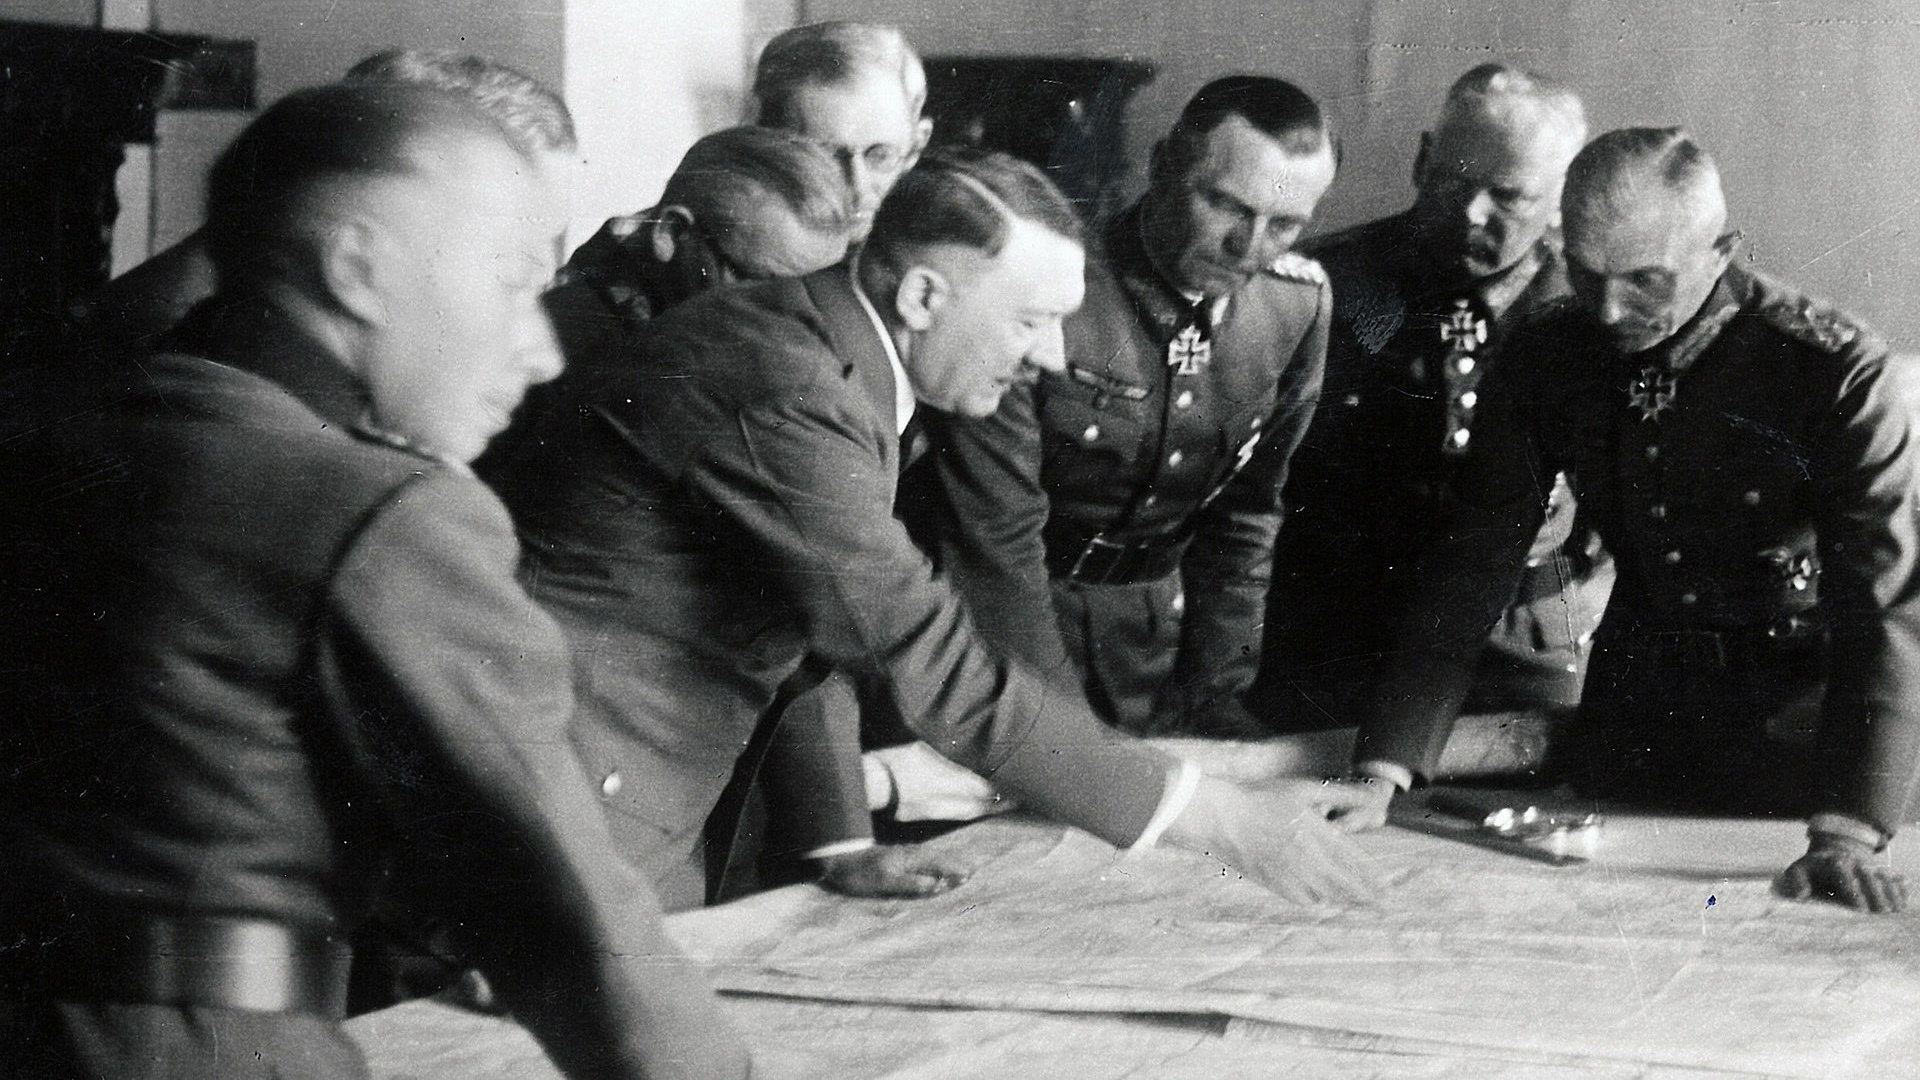 Χίτλερ: Αντίστροφη Μέτρηση στον Πόλεμο